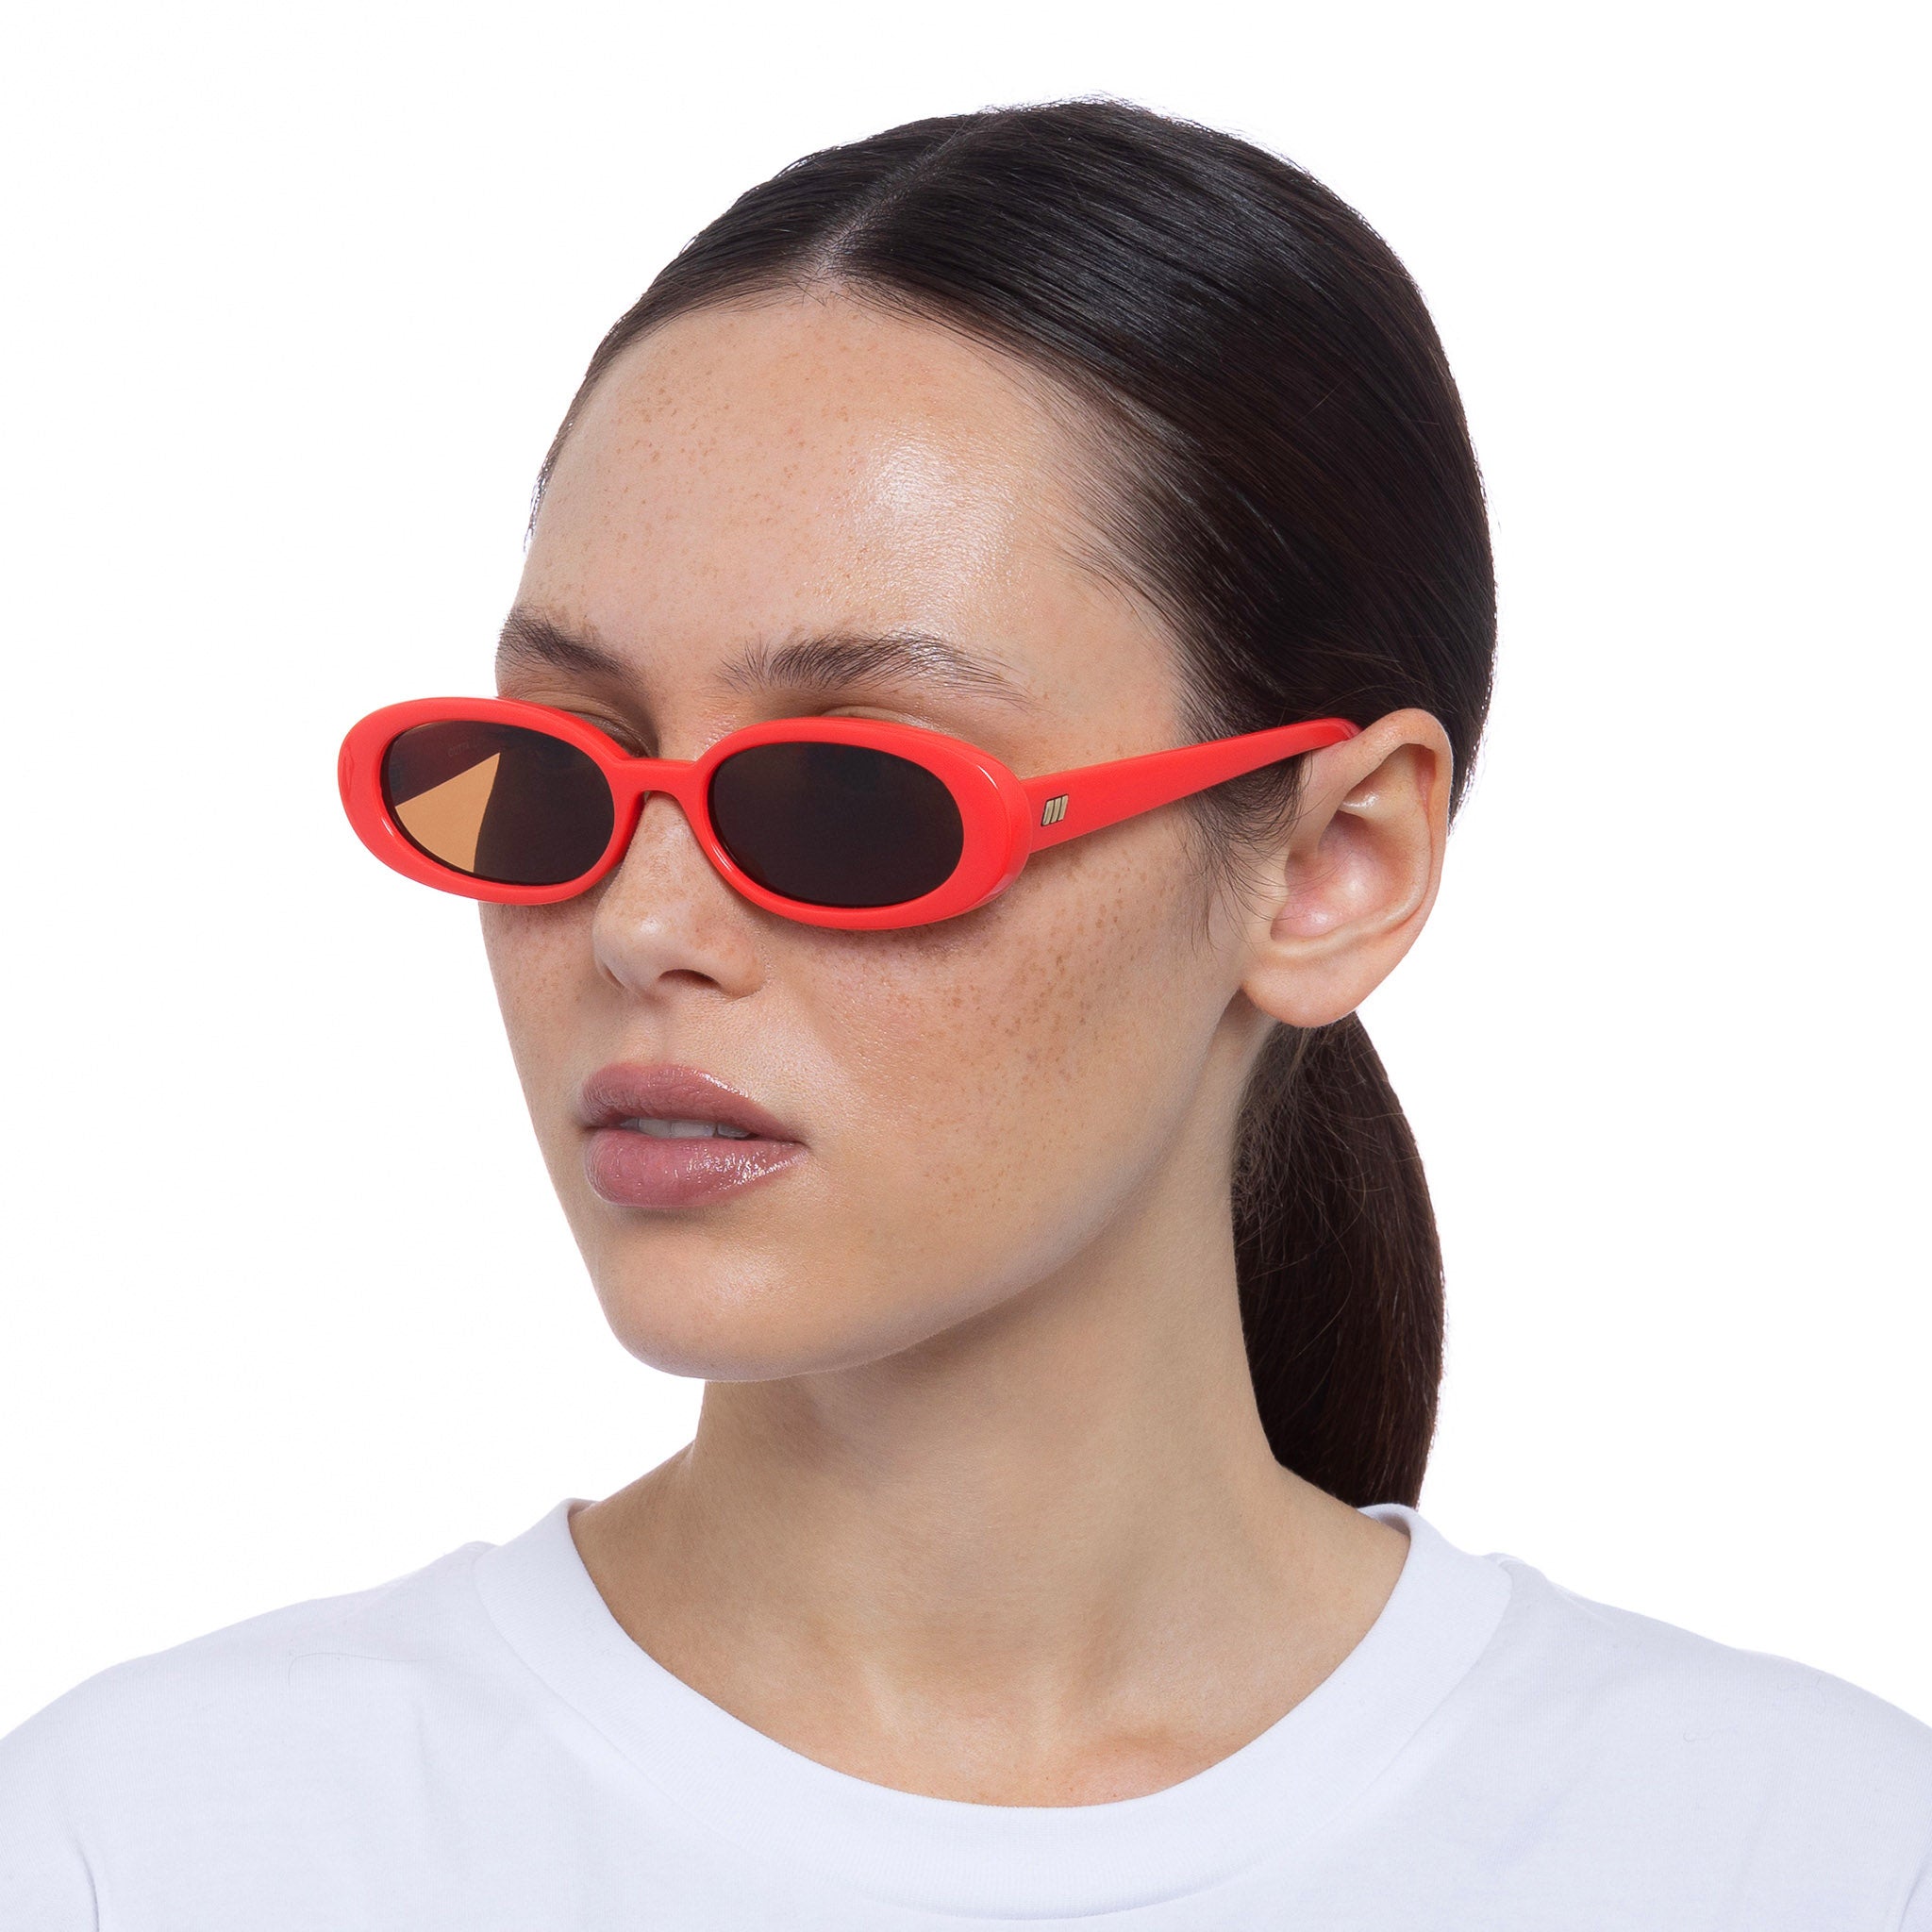 Le Specs Sunglasses - Outta Love Sunglasses - Electric Orange